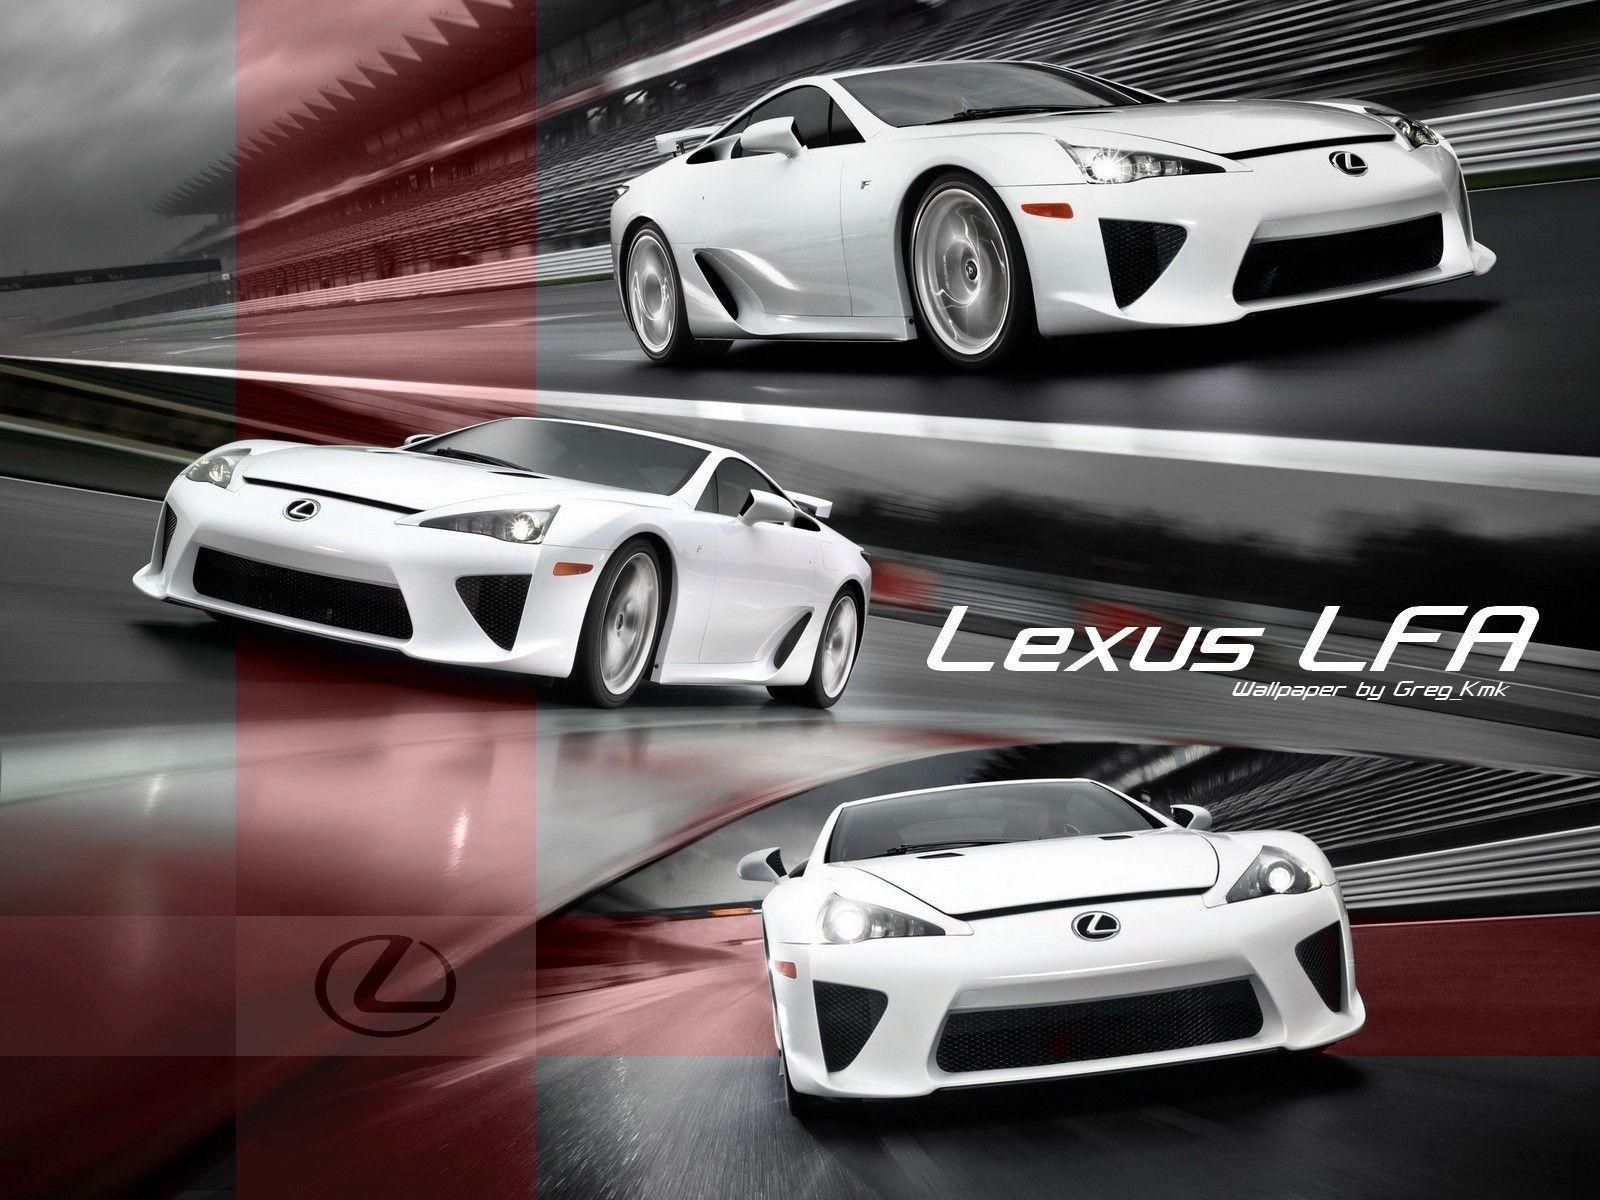 Lexus LFA Wallpaper. HD Wallpaper Base